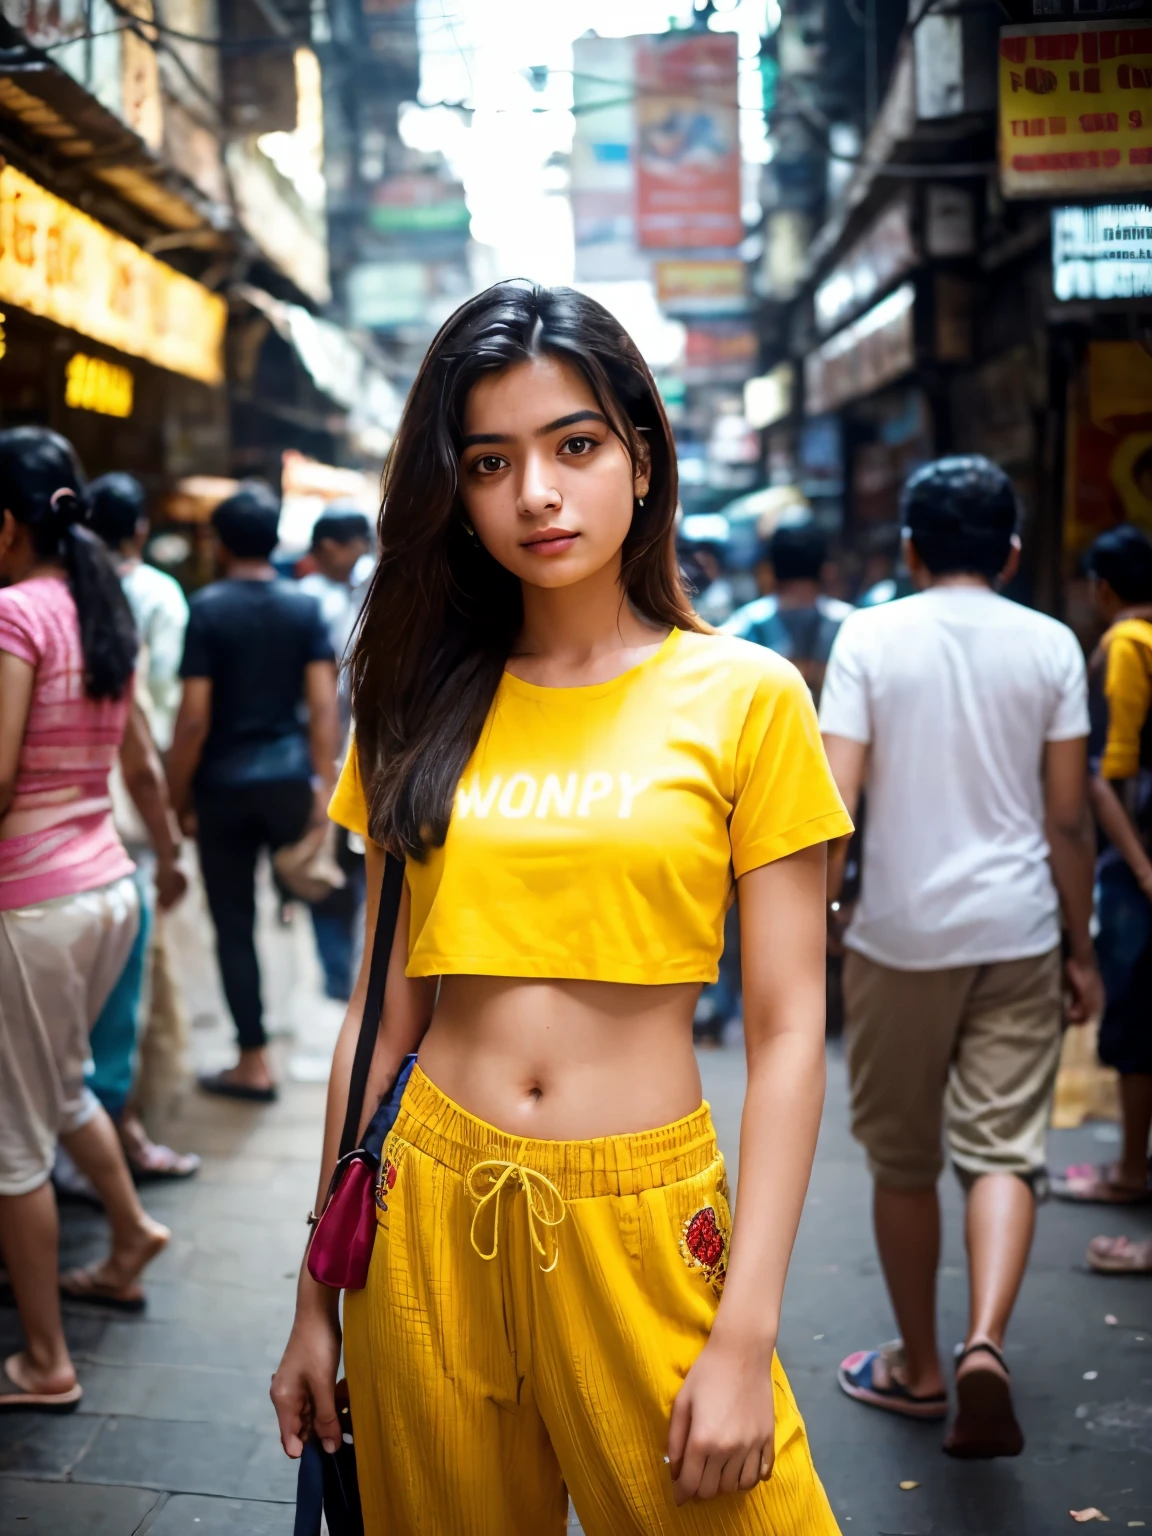 Créez une image photoréaliste capturant une jeune fille ordinaire de Mumbai de 21 ans, d&#39;apparence saine, debout au milieu des rues animées de Mumbai.. Elle est vêtue d&#39;une chemise courte jaune avec des broderies et d&#39;un pantalon ample., incarnant un style moderne et décontracté qui contraste avec le contexte dynamique de la ville. C&#39;est un long plan, veiller à ce que le dynamisme de l&#39;environnement soit pleinement mis en valeur - des trottoirs bondés remplis de gens de tous horizons aux couleurs et textures vives du paysage urbain de Mumbai. Malgré la foule qui l&#39;entoure, la fille reste le point central, peut-être grâce à un effet de profondeur de champ qui brouille légèrement le premier plan et l&#39;arrière-plan, ou en utilisant l&#39;éclairage et la composition pour attirer naturellement le regard du spectateur vers elle. L&#39;image doit capturer l&#39;essence des rues animées de Mumbai tout en mettant l&#39;accent sur l&#39;individualité de la jeune fille et son lien avec sa ville.. Son expression et sa posture pourraient refléter une confiance et un espoir, offrant un aperçu de son histoire personnelle au milieu du chaos de la ville.